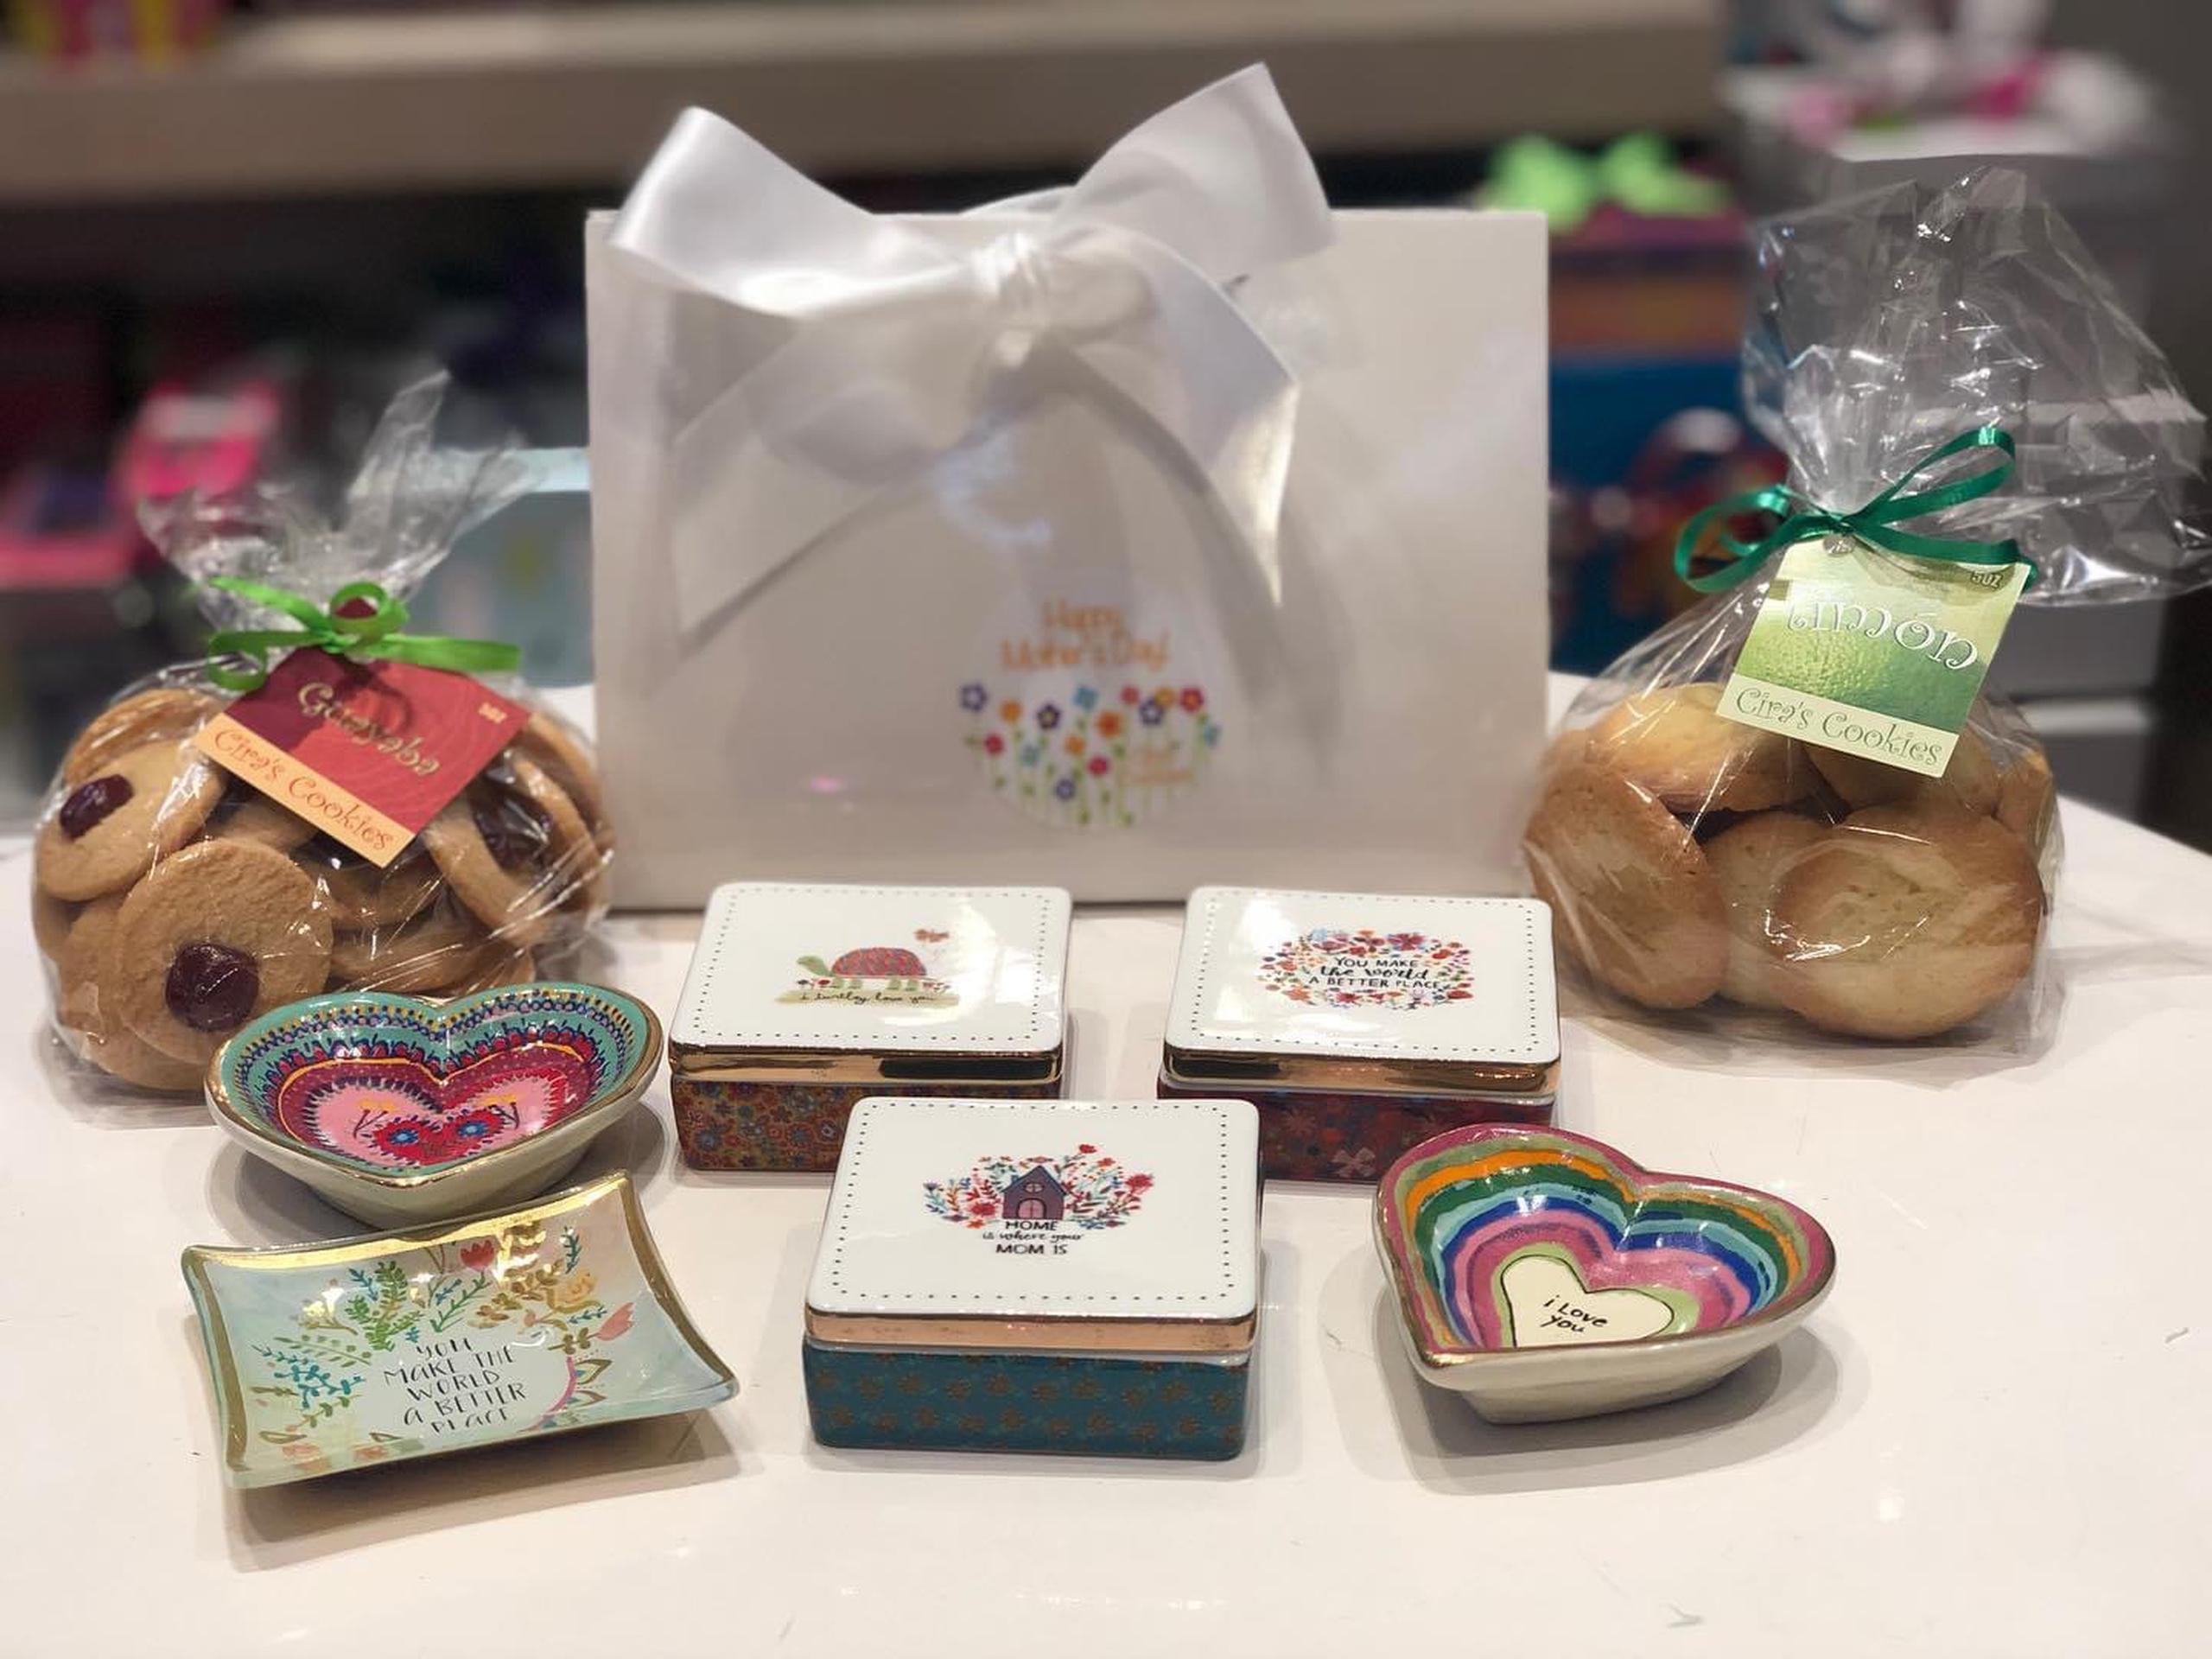 Ciras Cookies tiene disponibles una variedad de cajas para galletas y algún otro detalle como platitos de cristal o libretas.